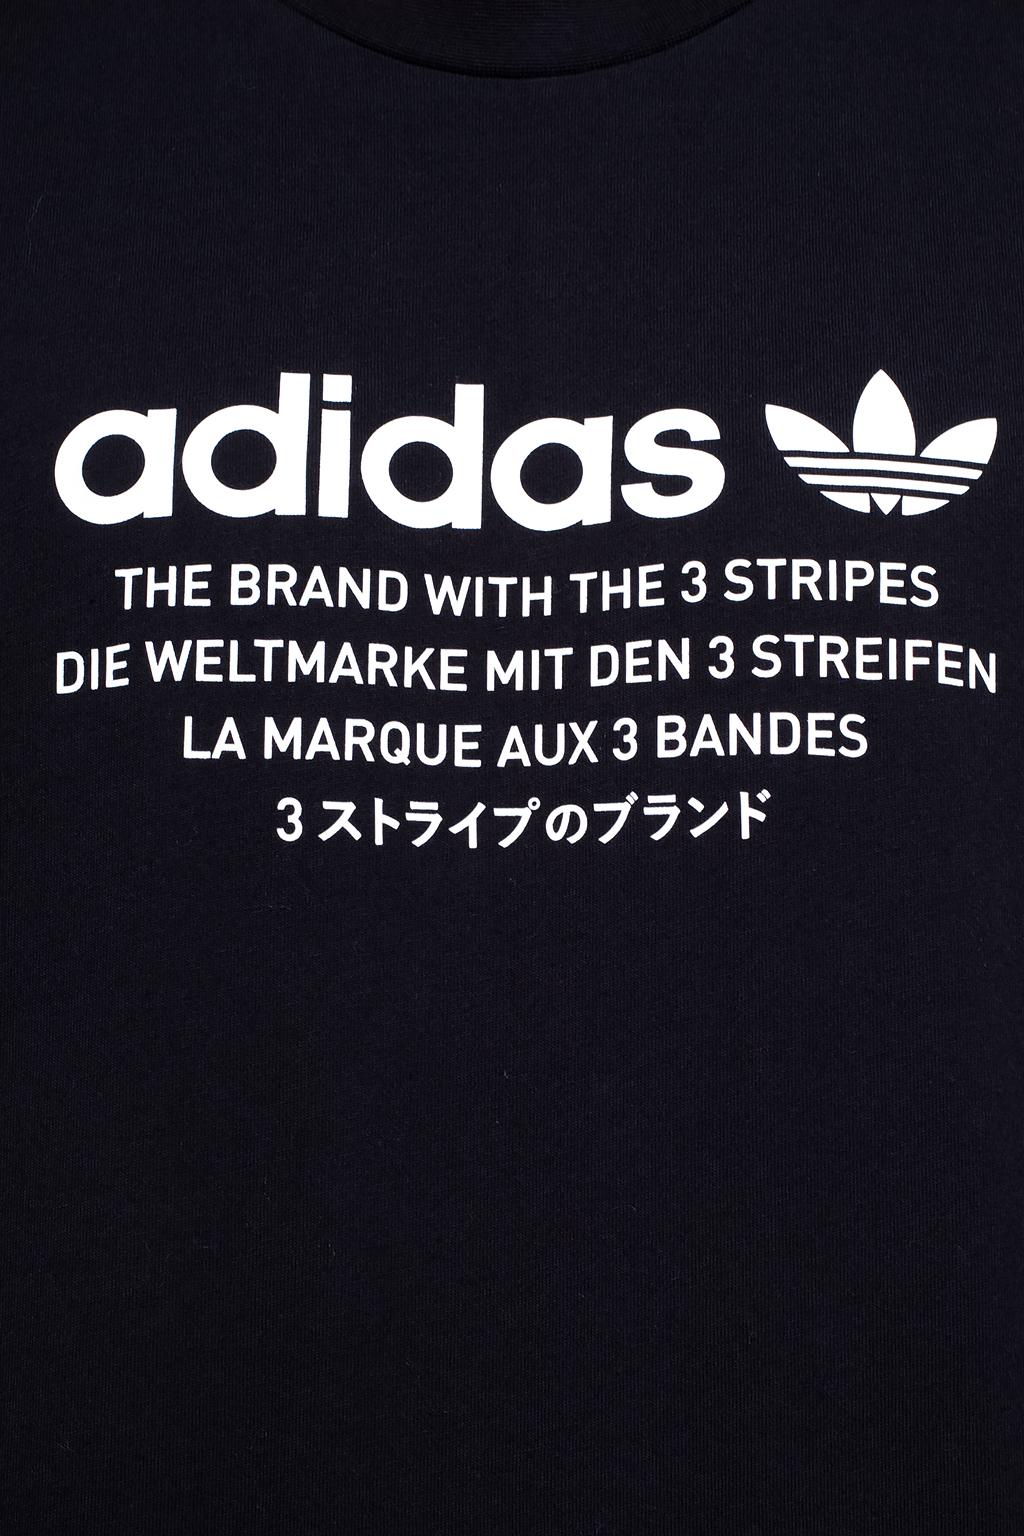 adidas the brand with the 3 stripes die weltmarke mit den 3 streifen la marque aux 3 bandes